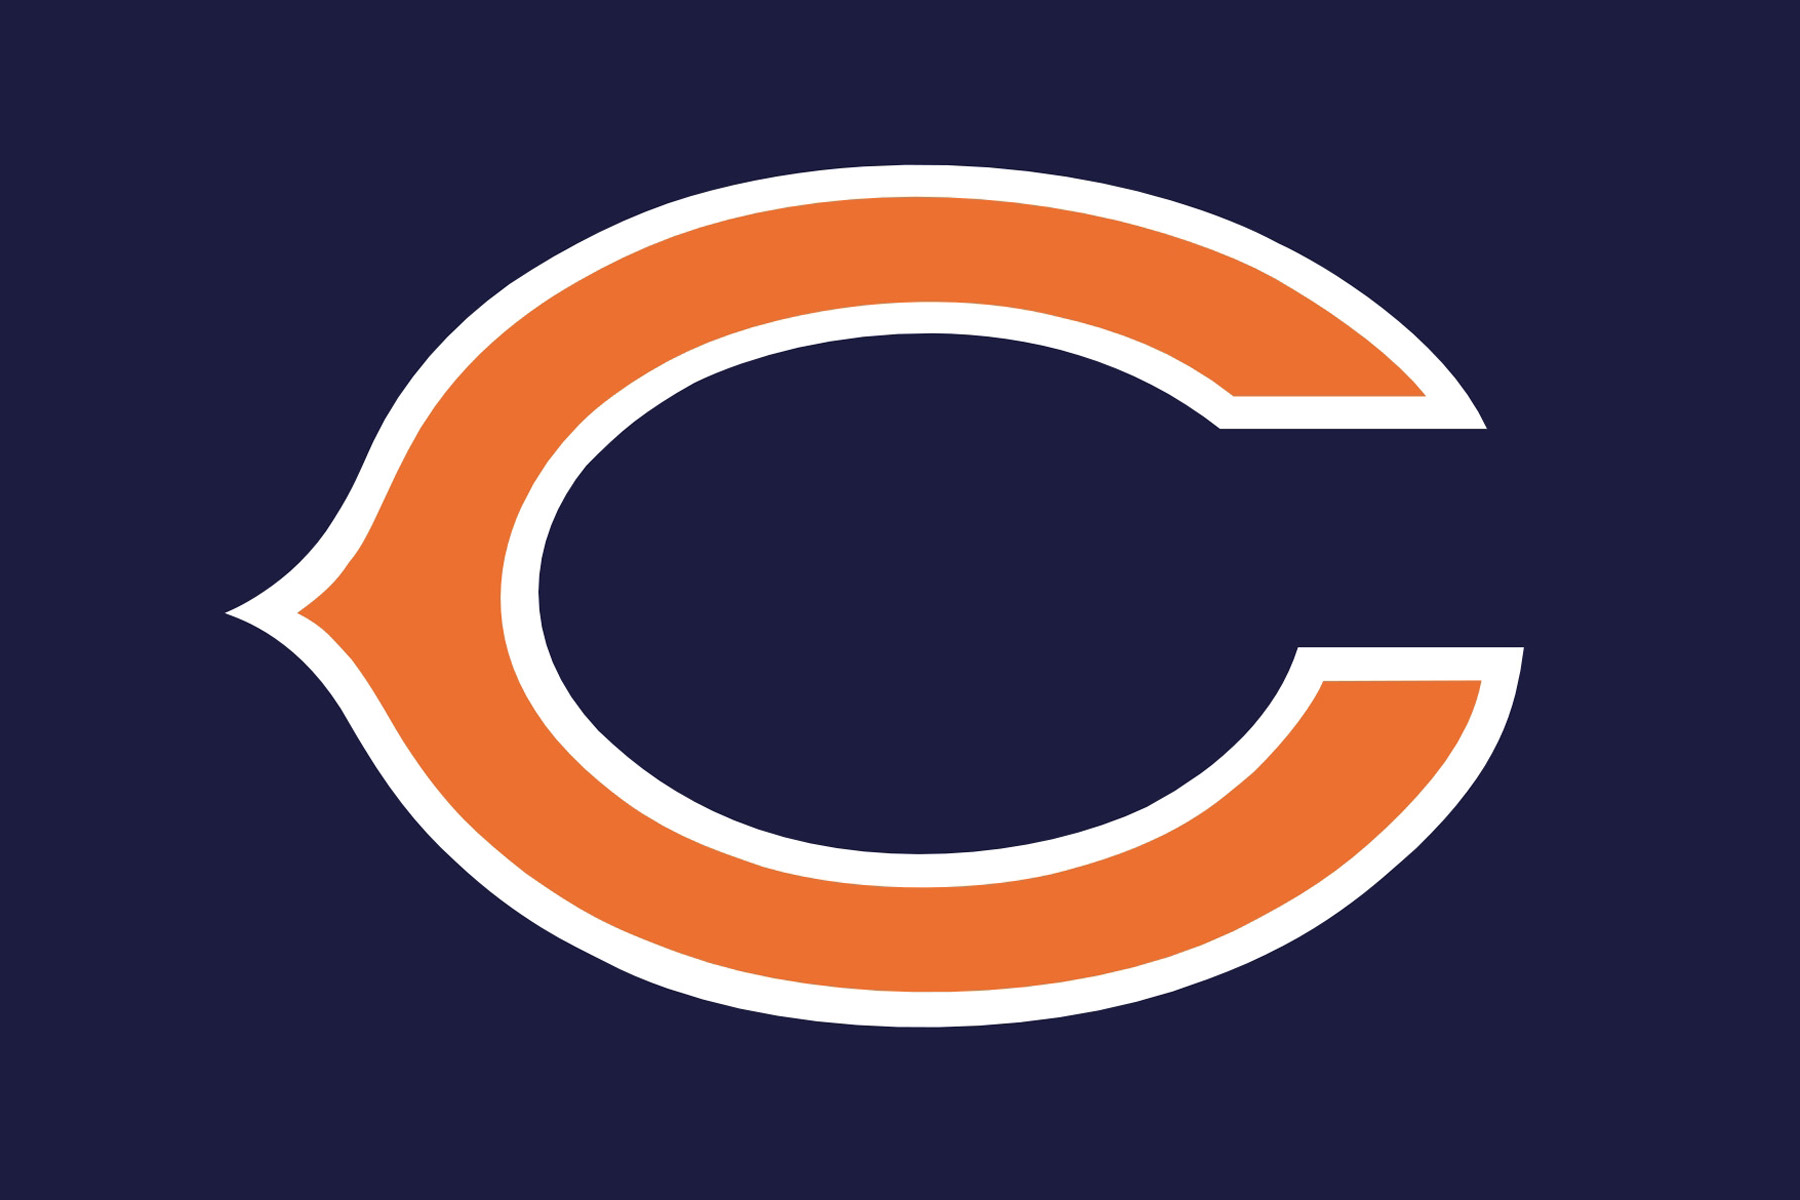 chicago-bears-logo-clipart-best